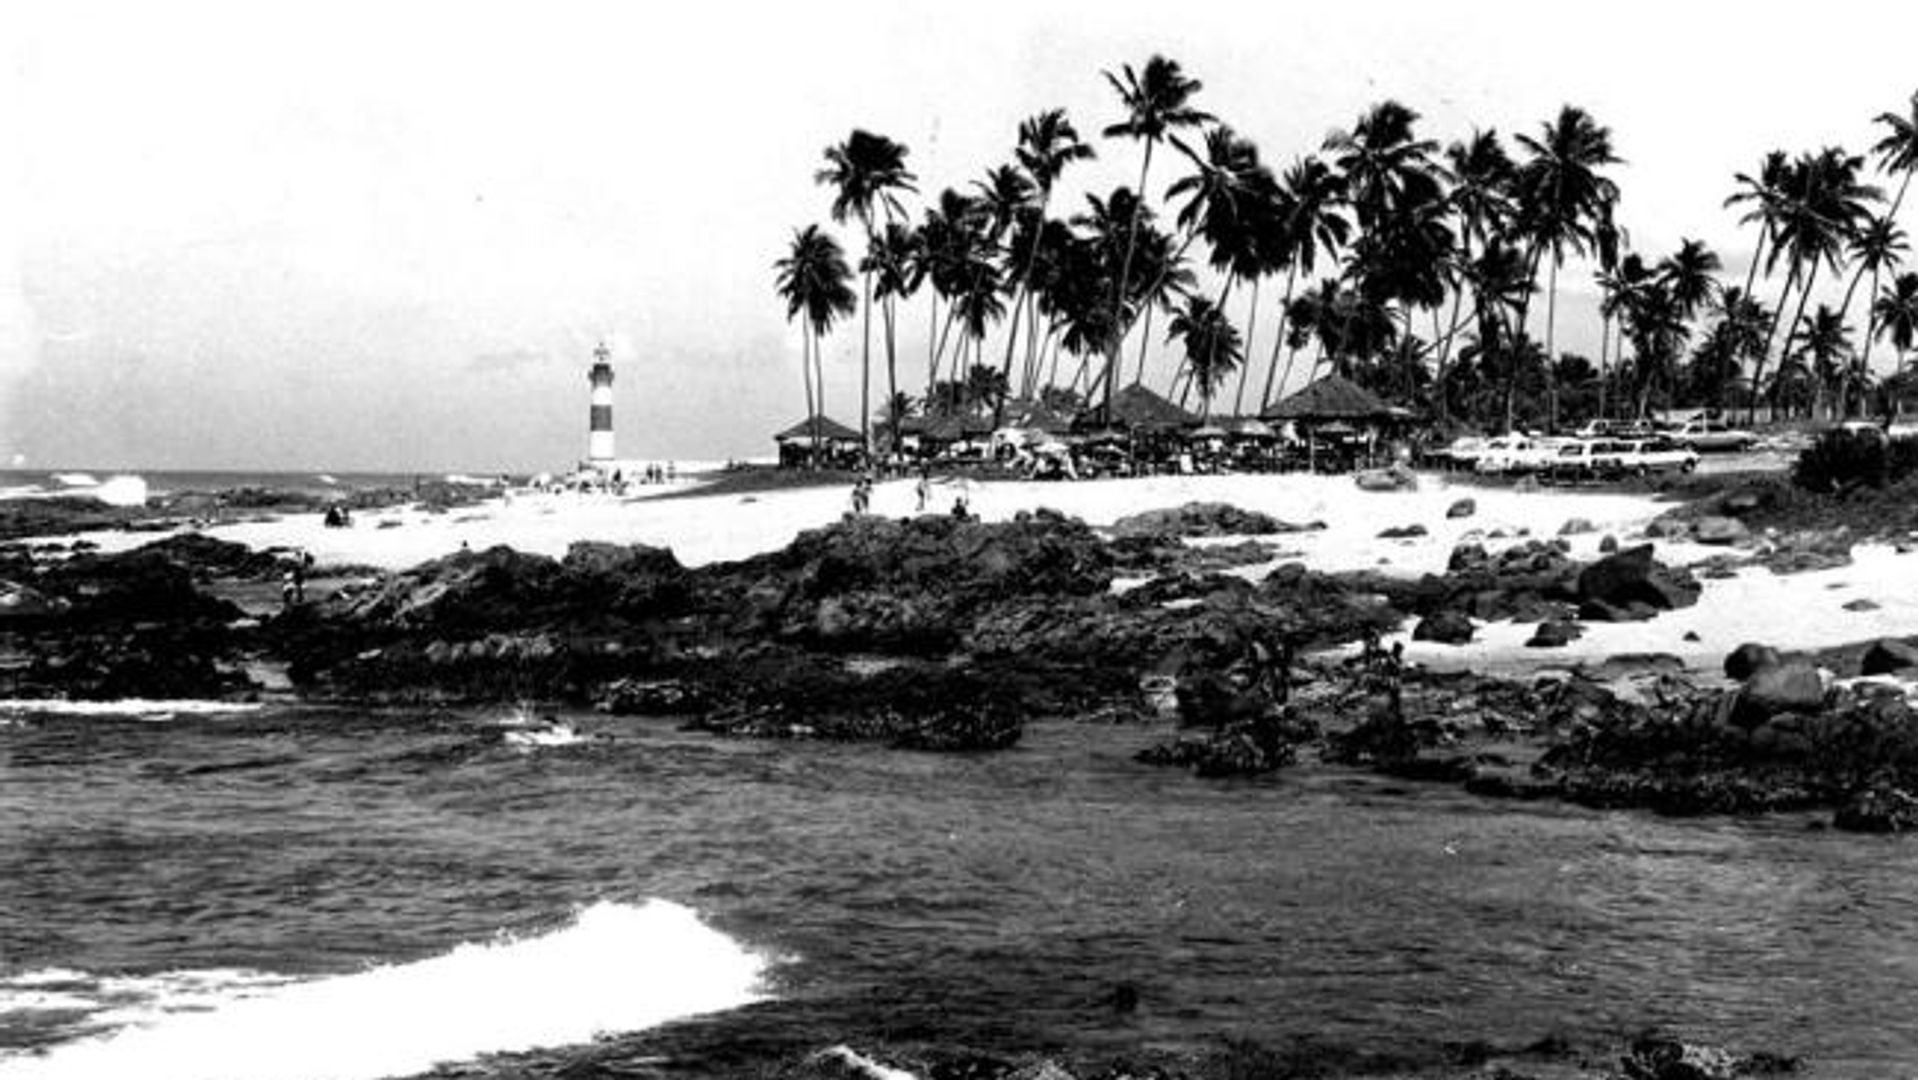 Fotografia do Farol de Itapuã na década de 1970